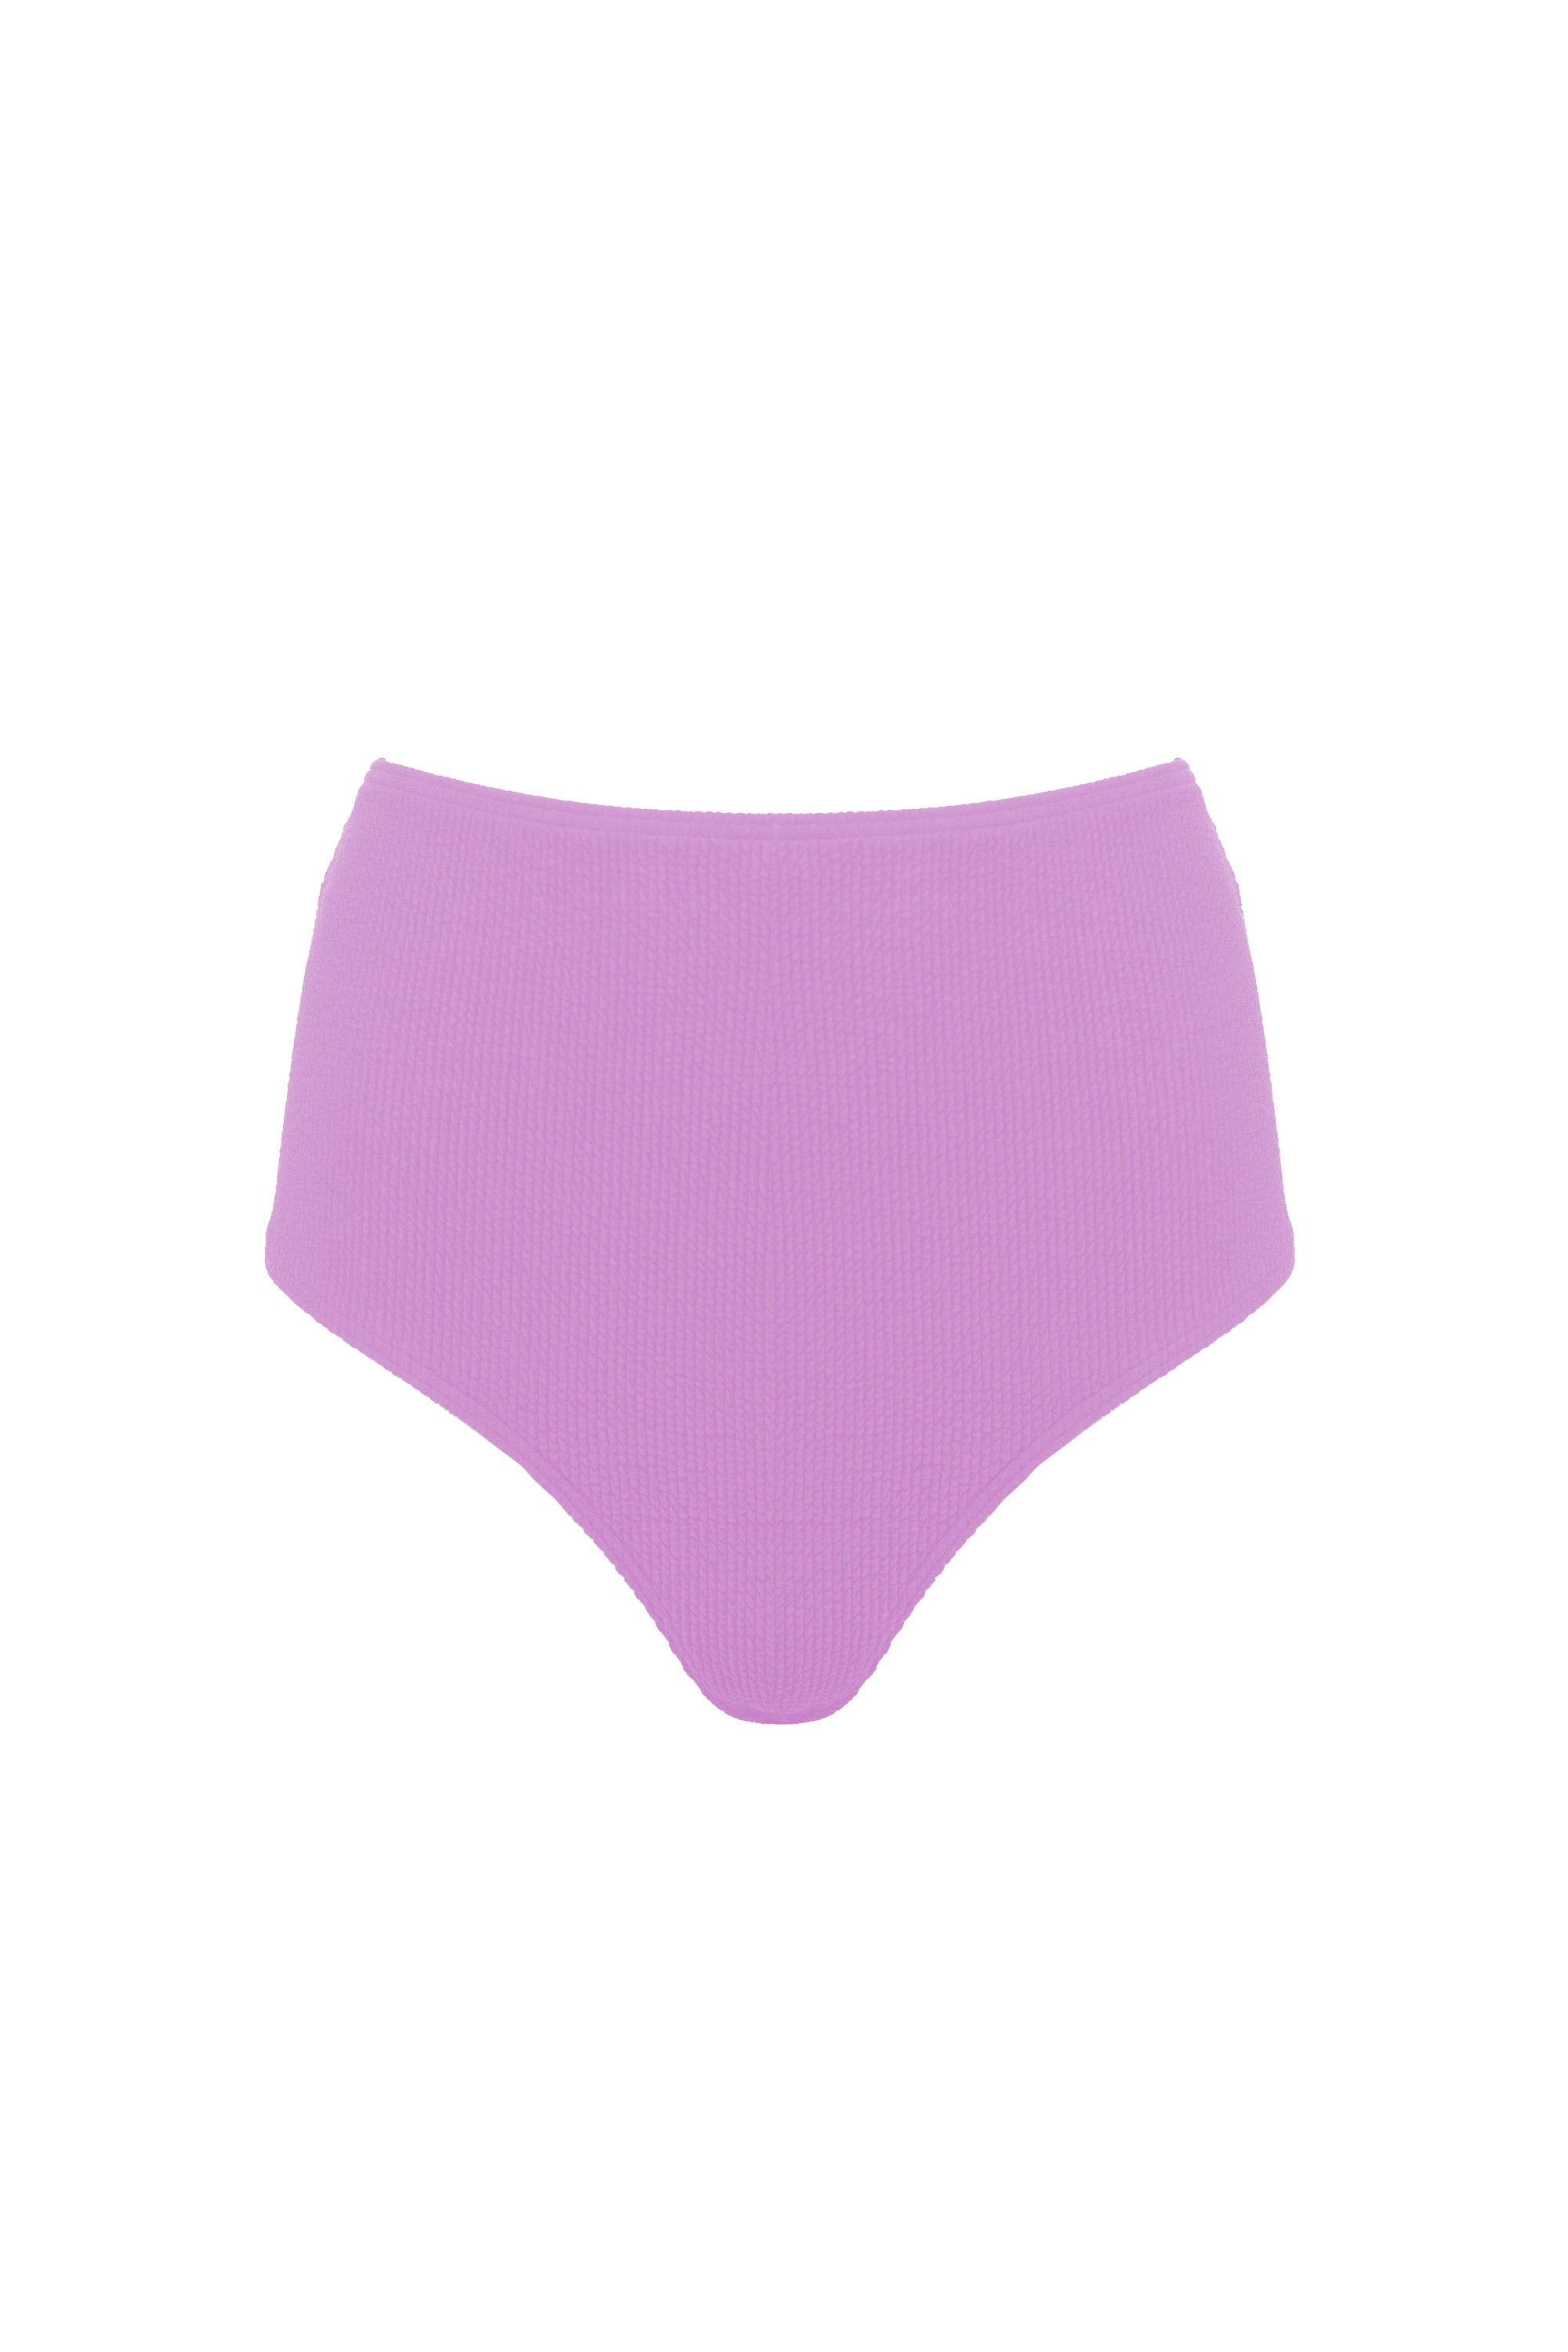 Lilac scrunch fabric high-waisted bikini bottoms